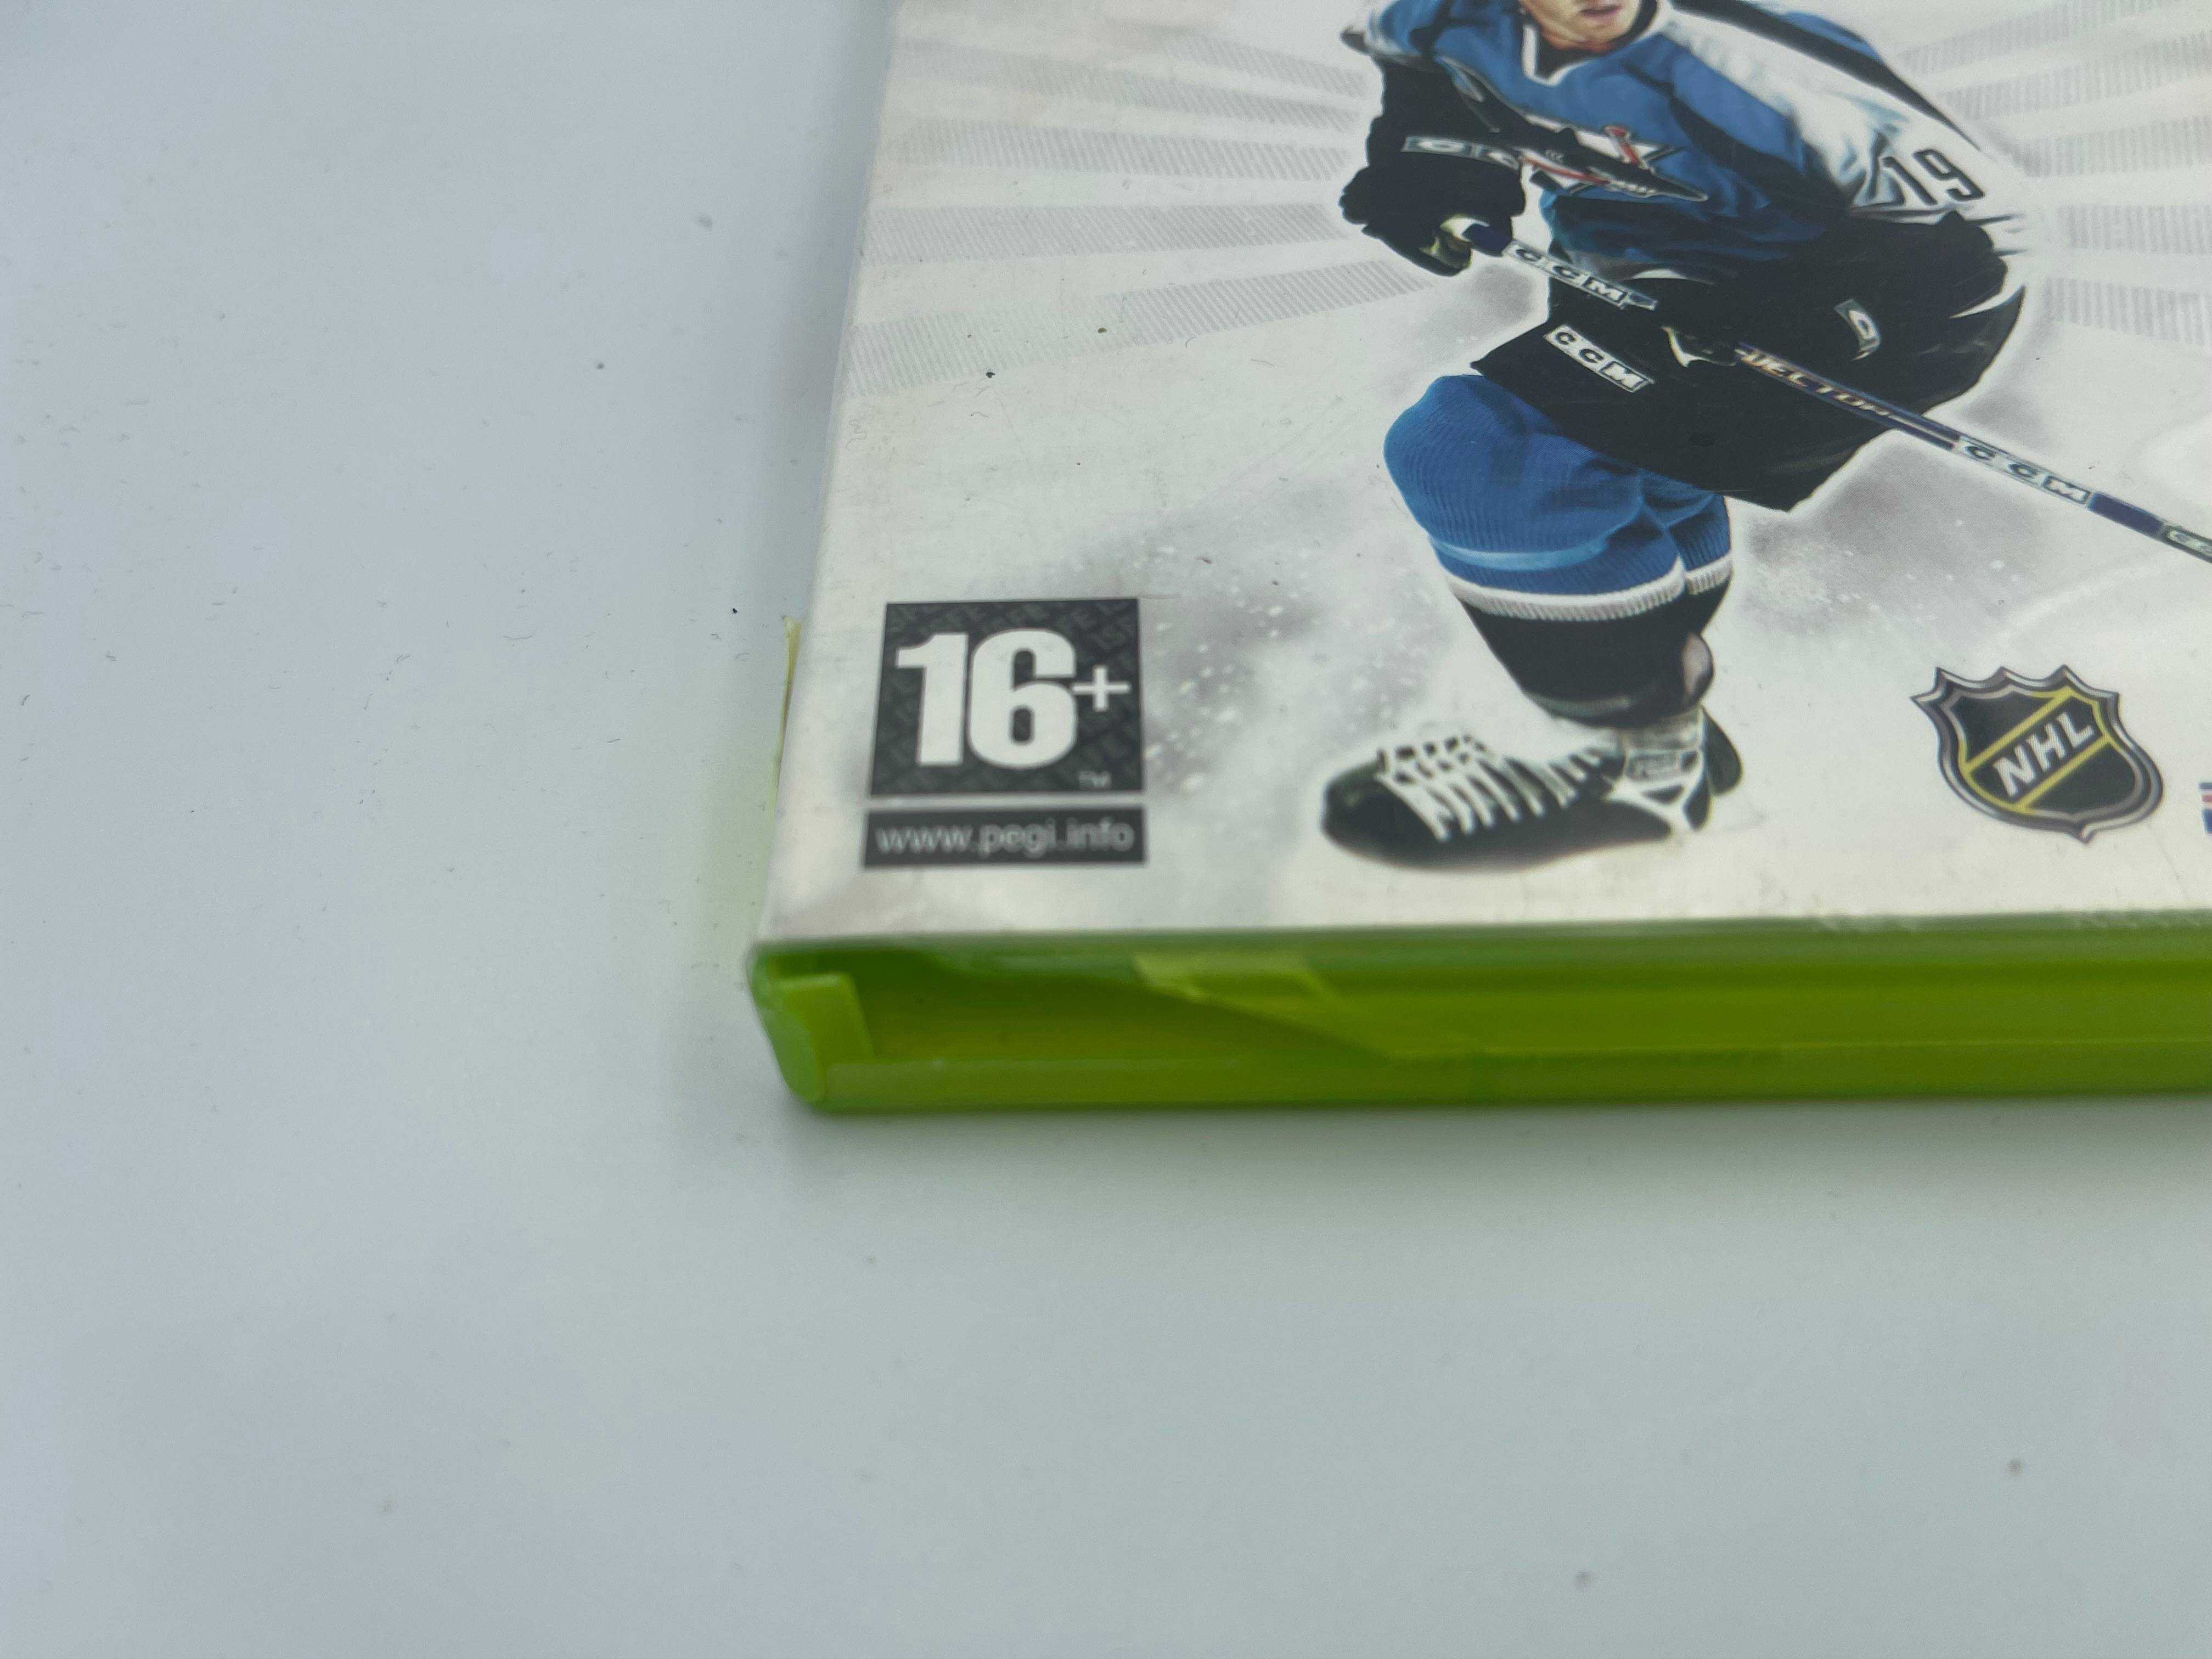 NHL 2k7 Xbox 360